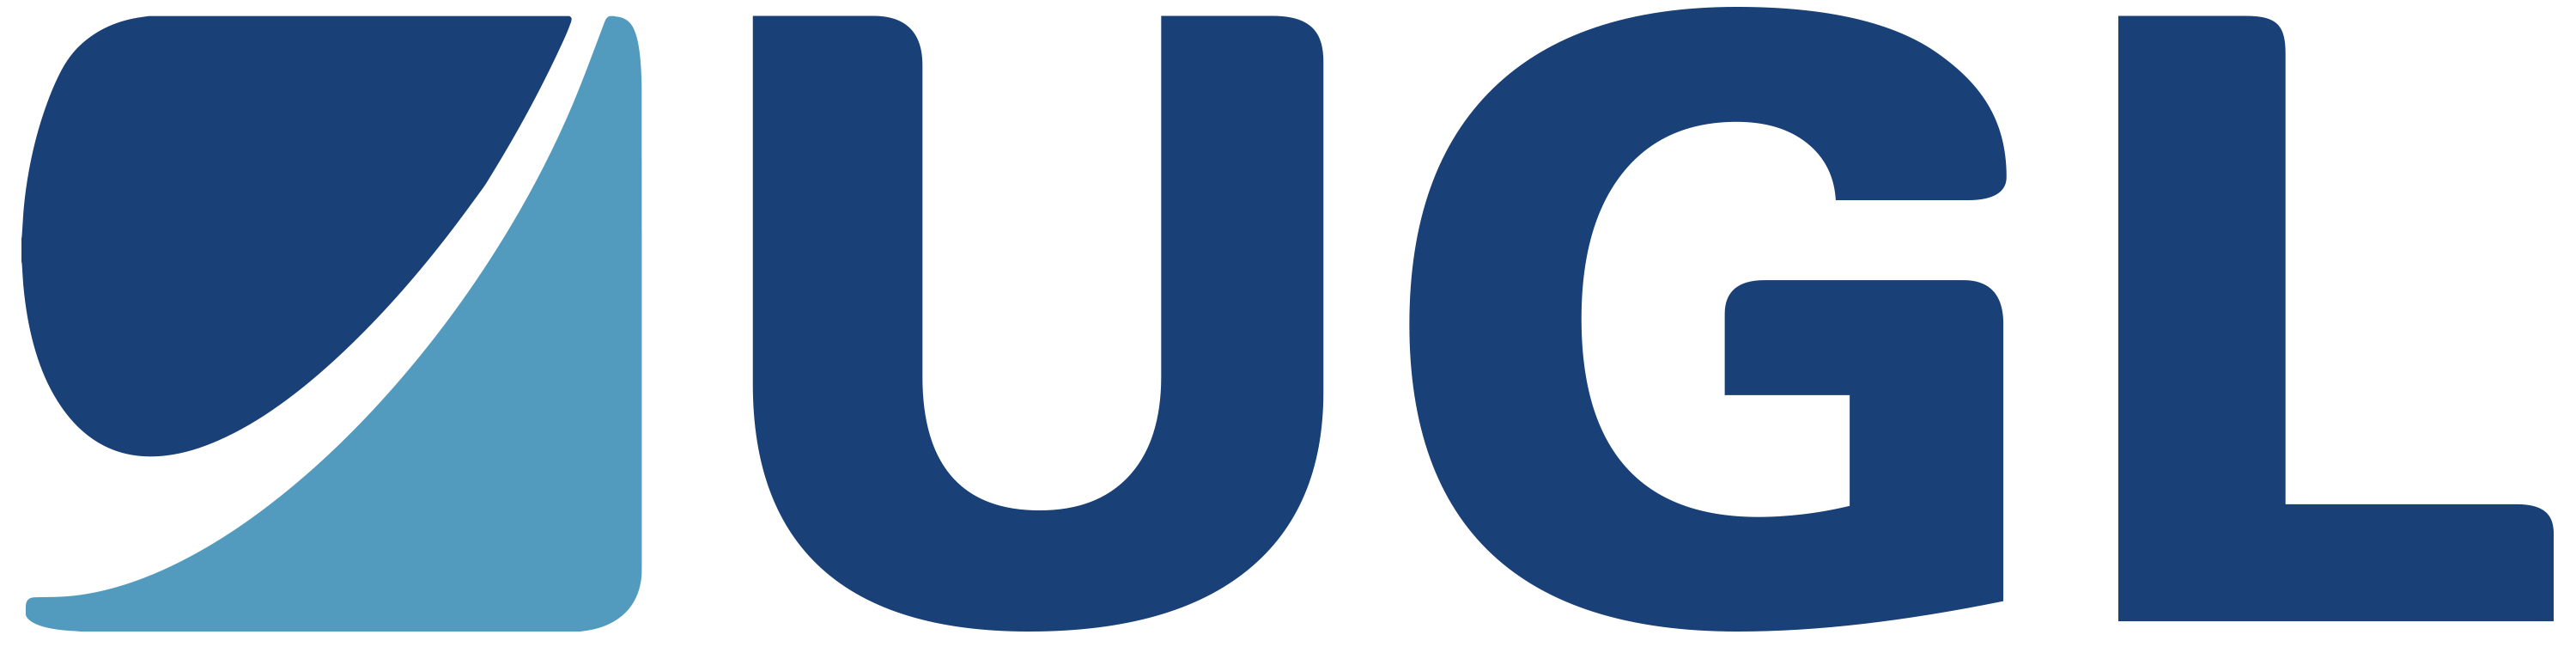 UGL logo in colour